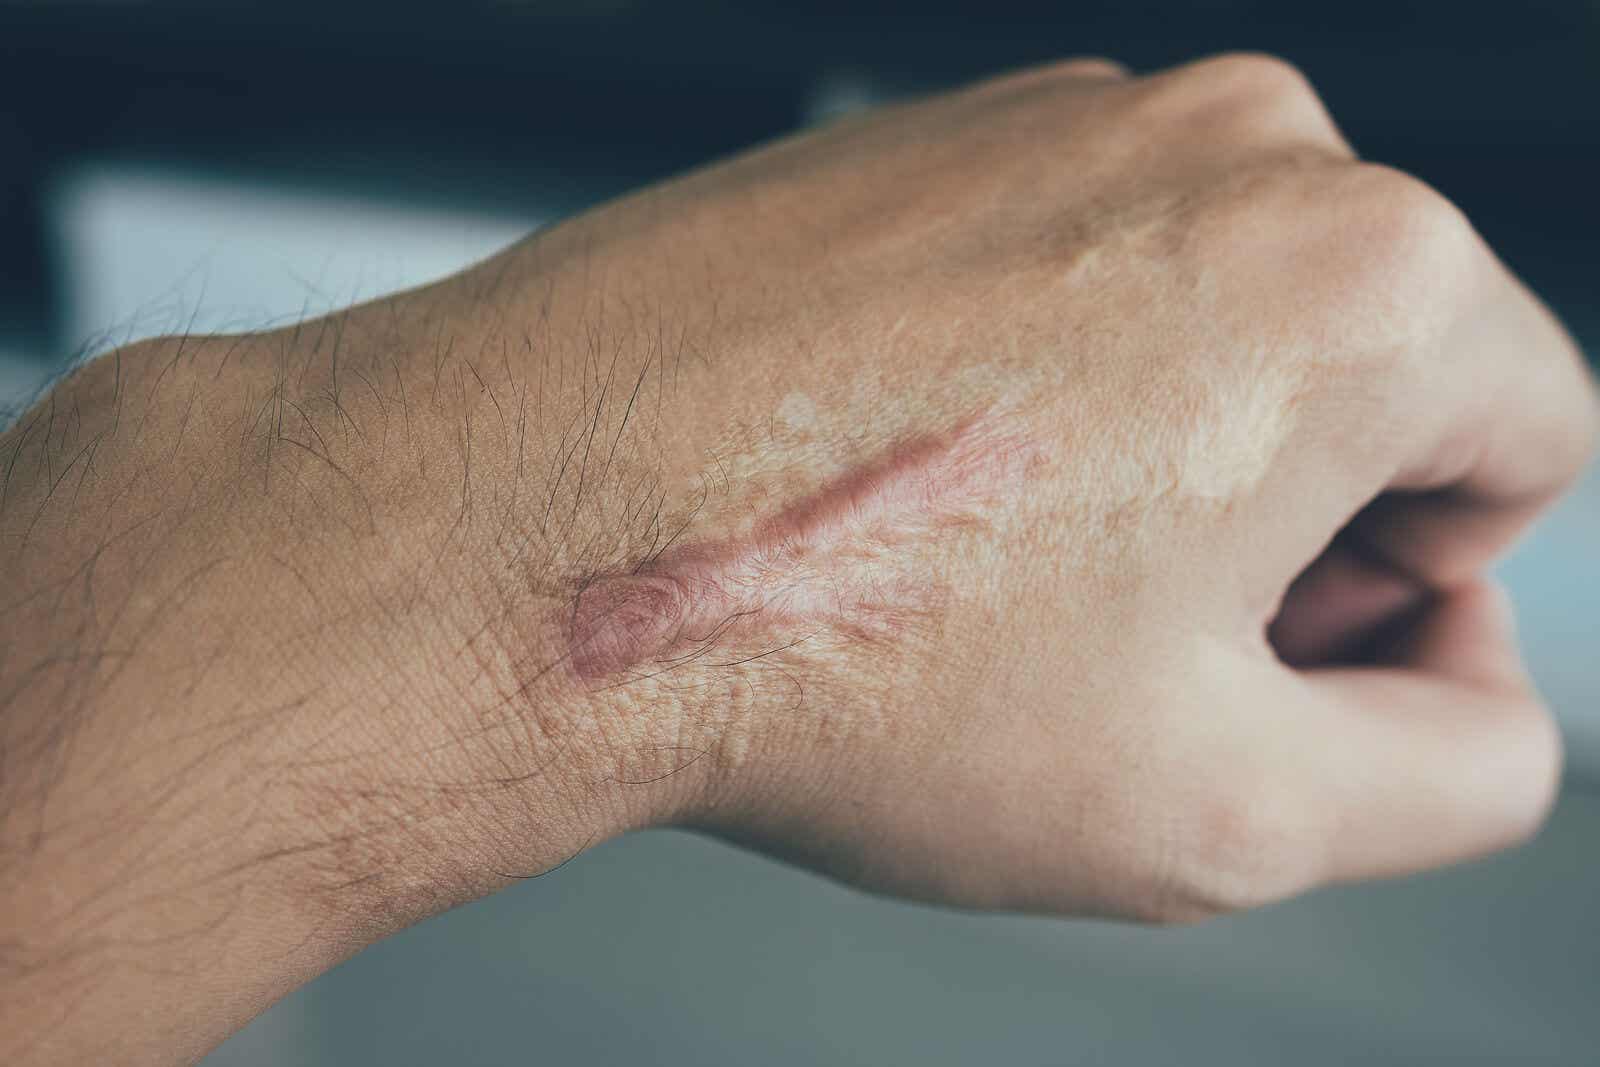 What is a keloid scar?